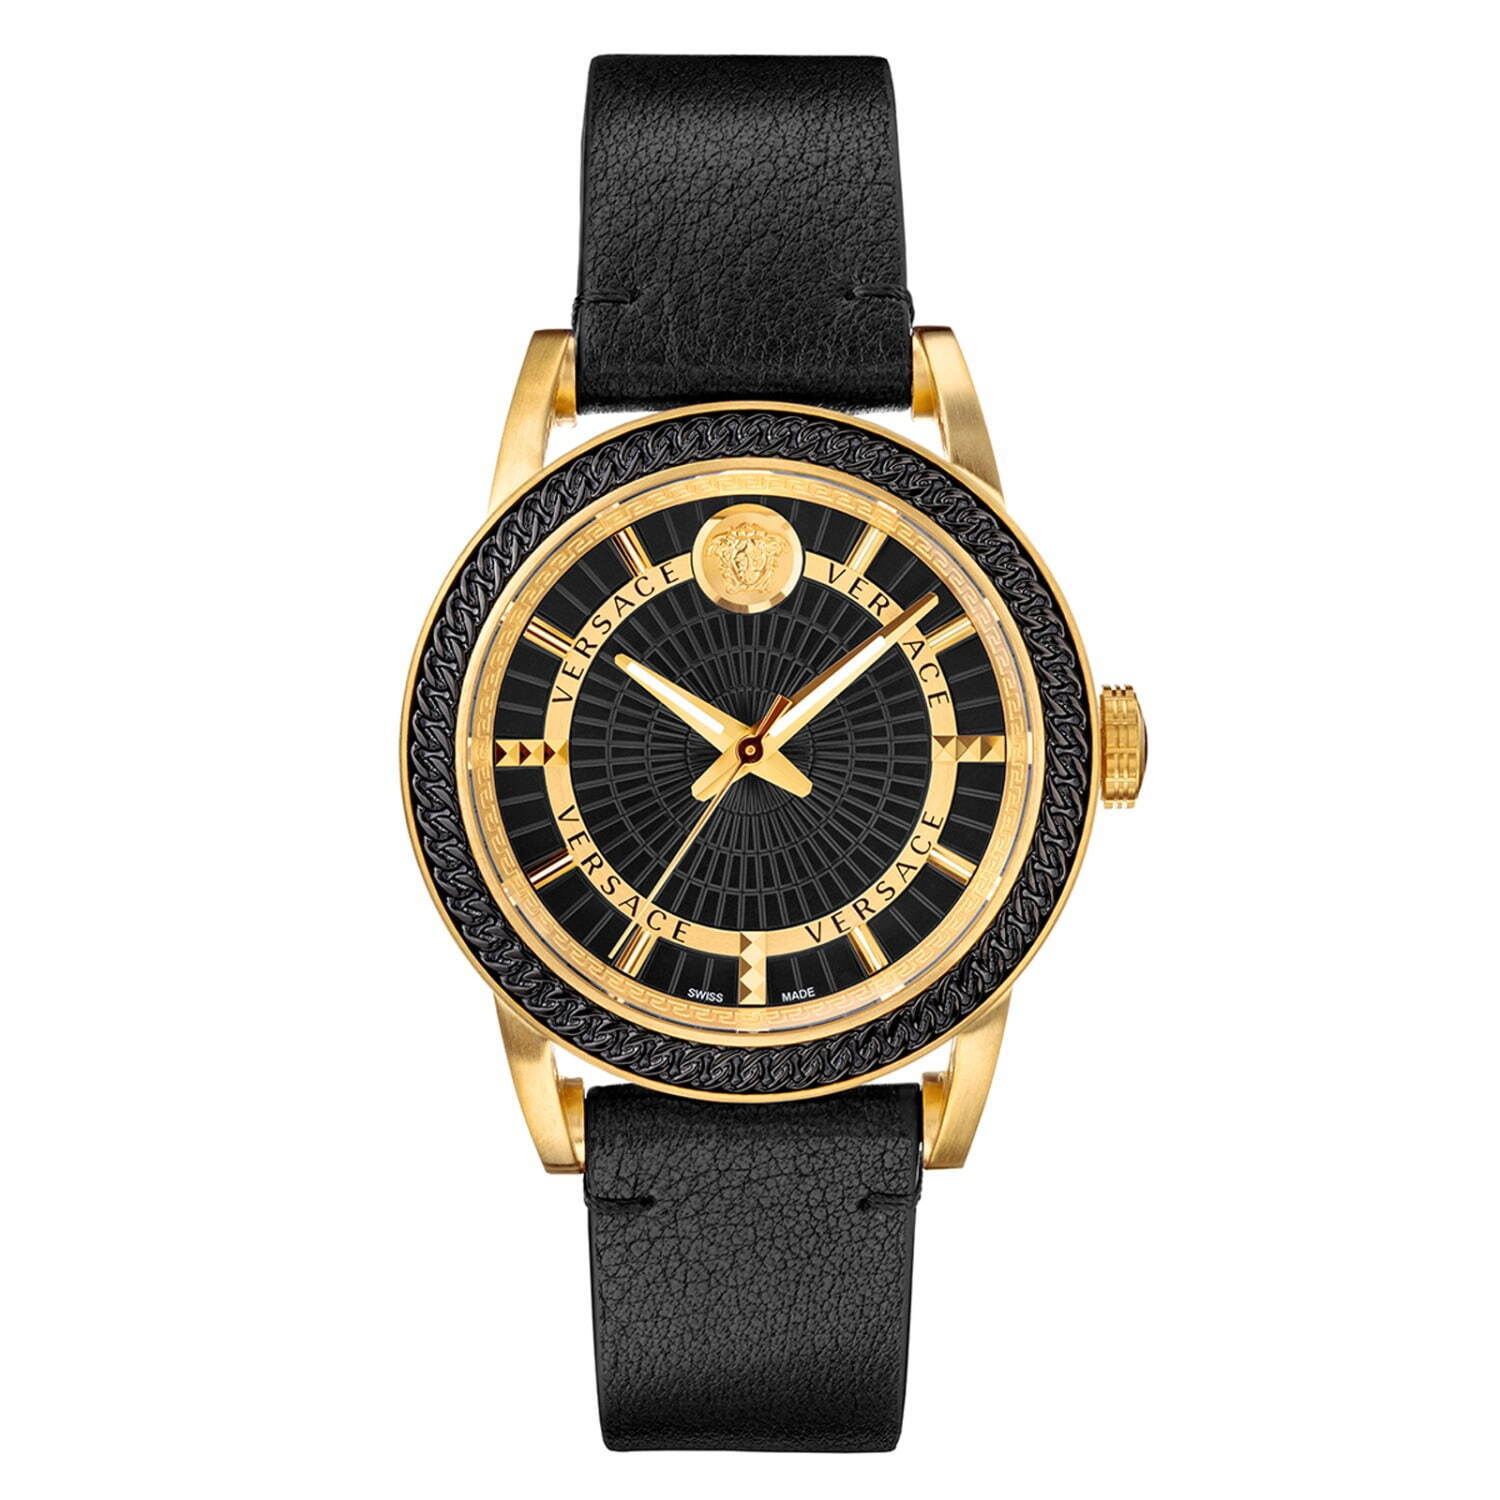 ヴェルサーチェの新作腕時計「ヴェルサーチェ コード」チェーンや 